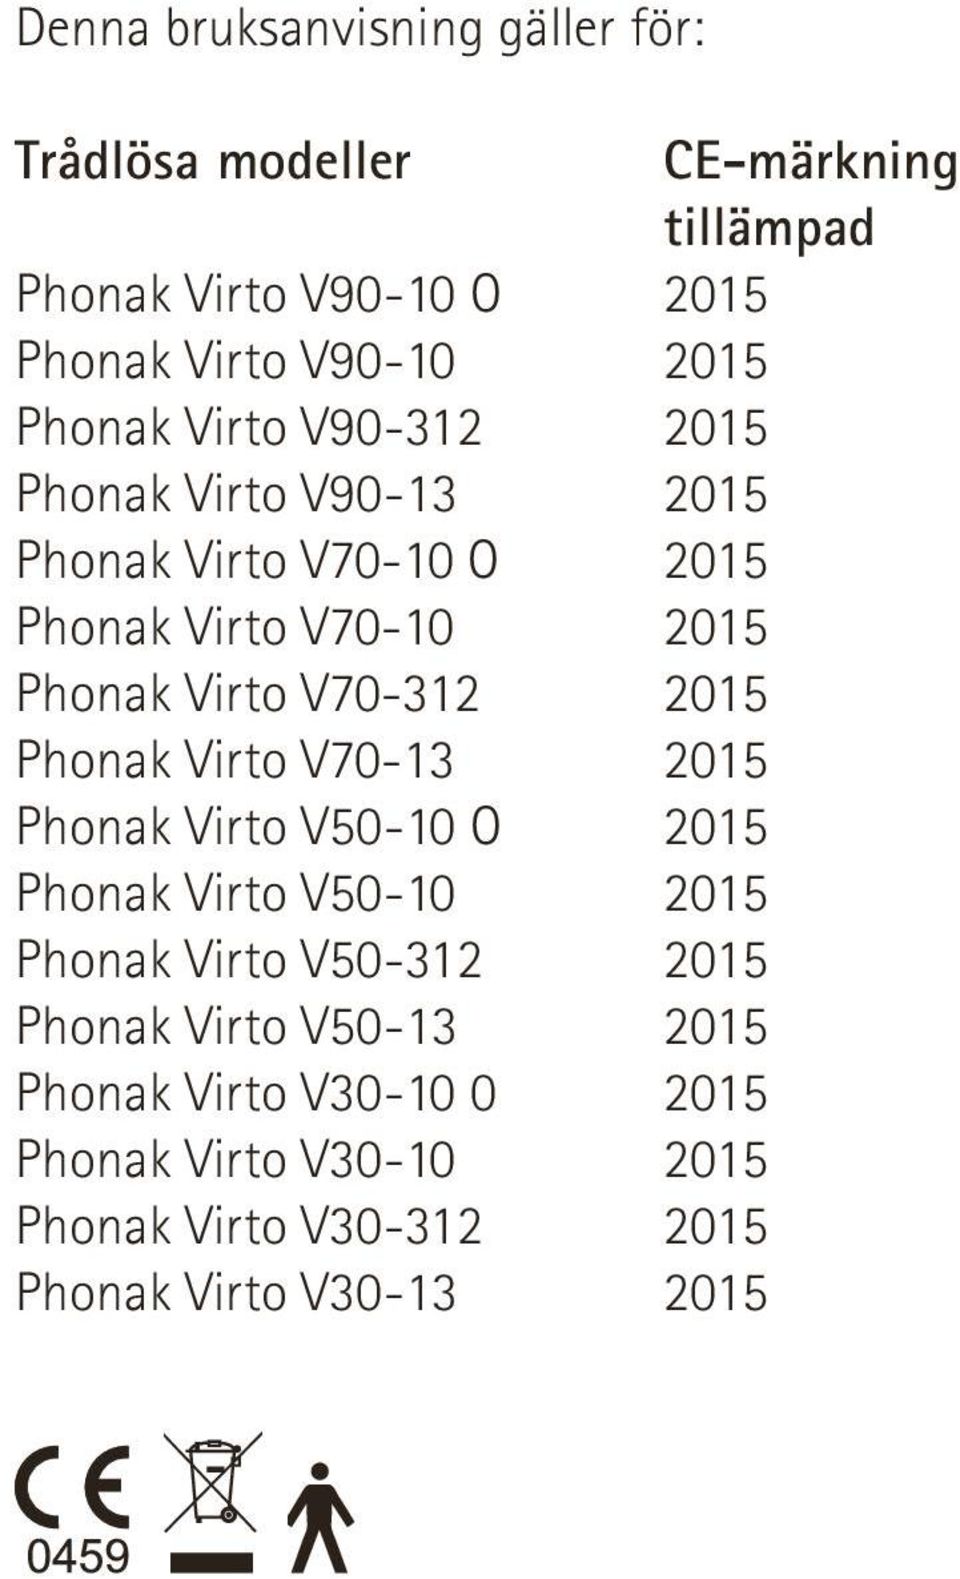 Phonak Virto V50-10 Phonak Virto V50-312 Phonak Virto V50-13 Phonak Virto V30-10 0 Phonak Virto V30-10 Phonak Virto